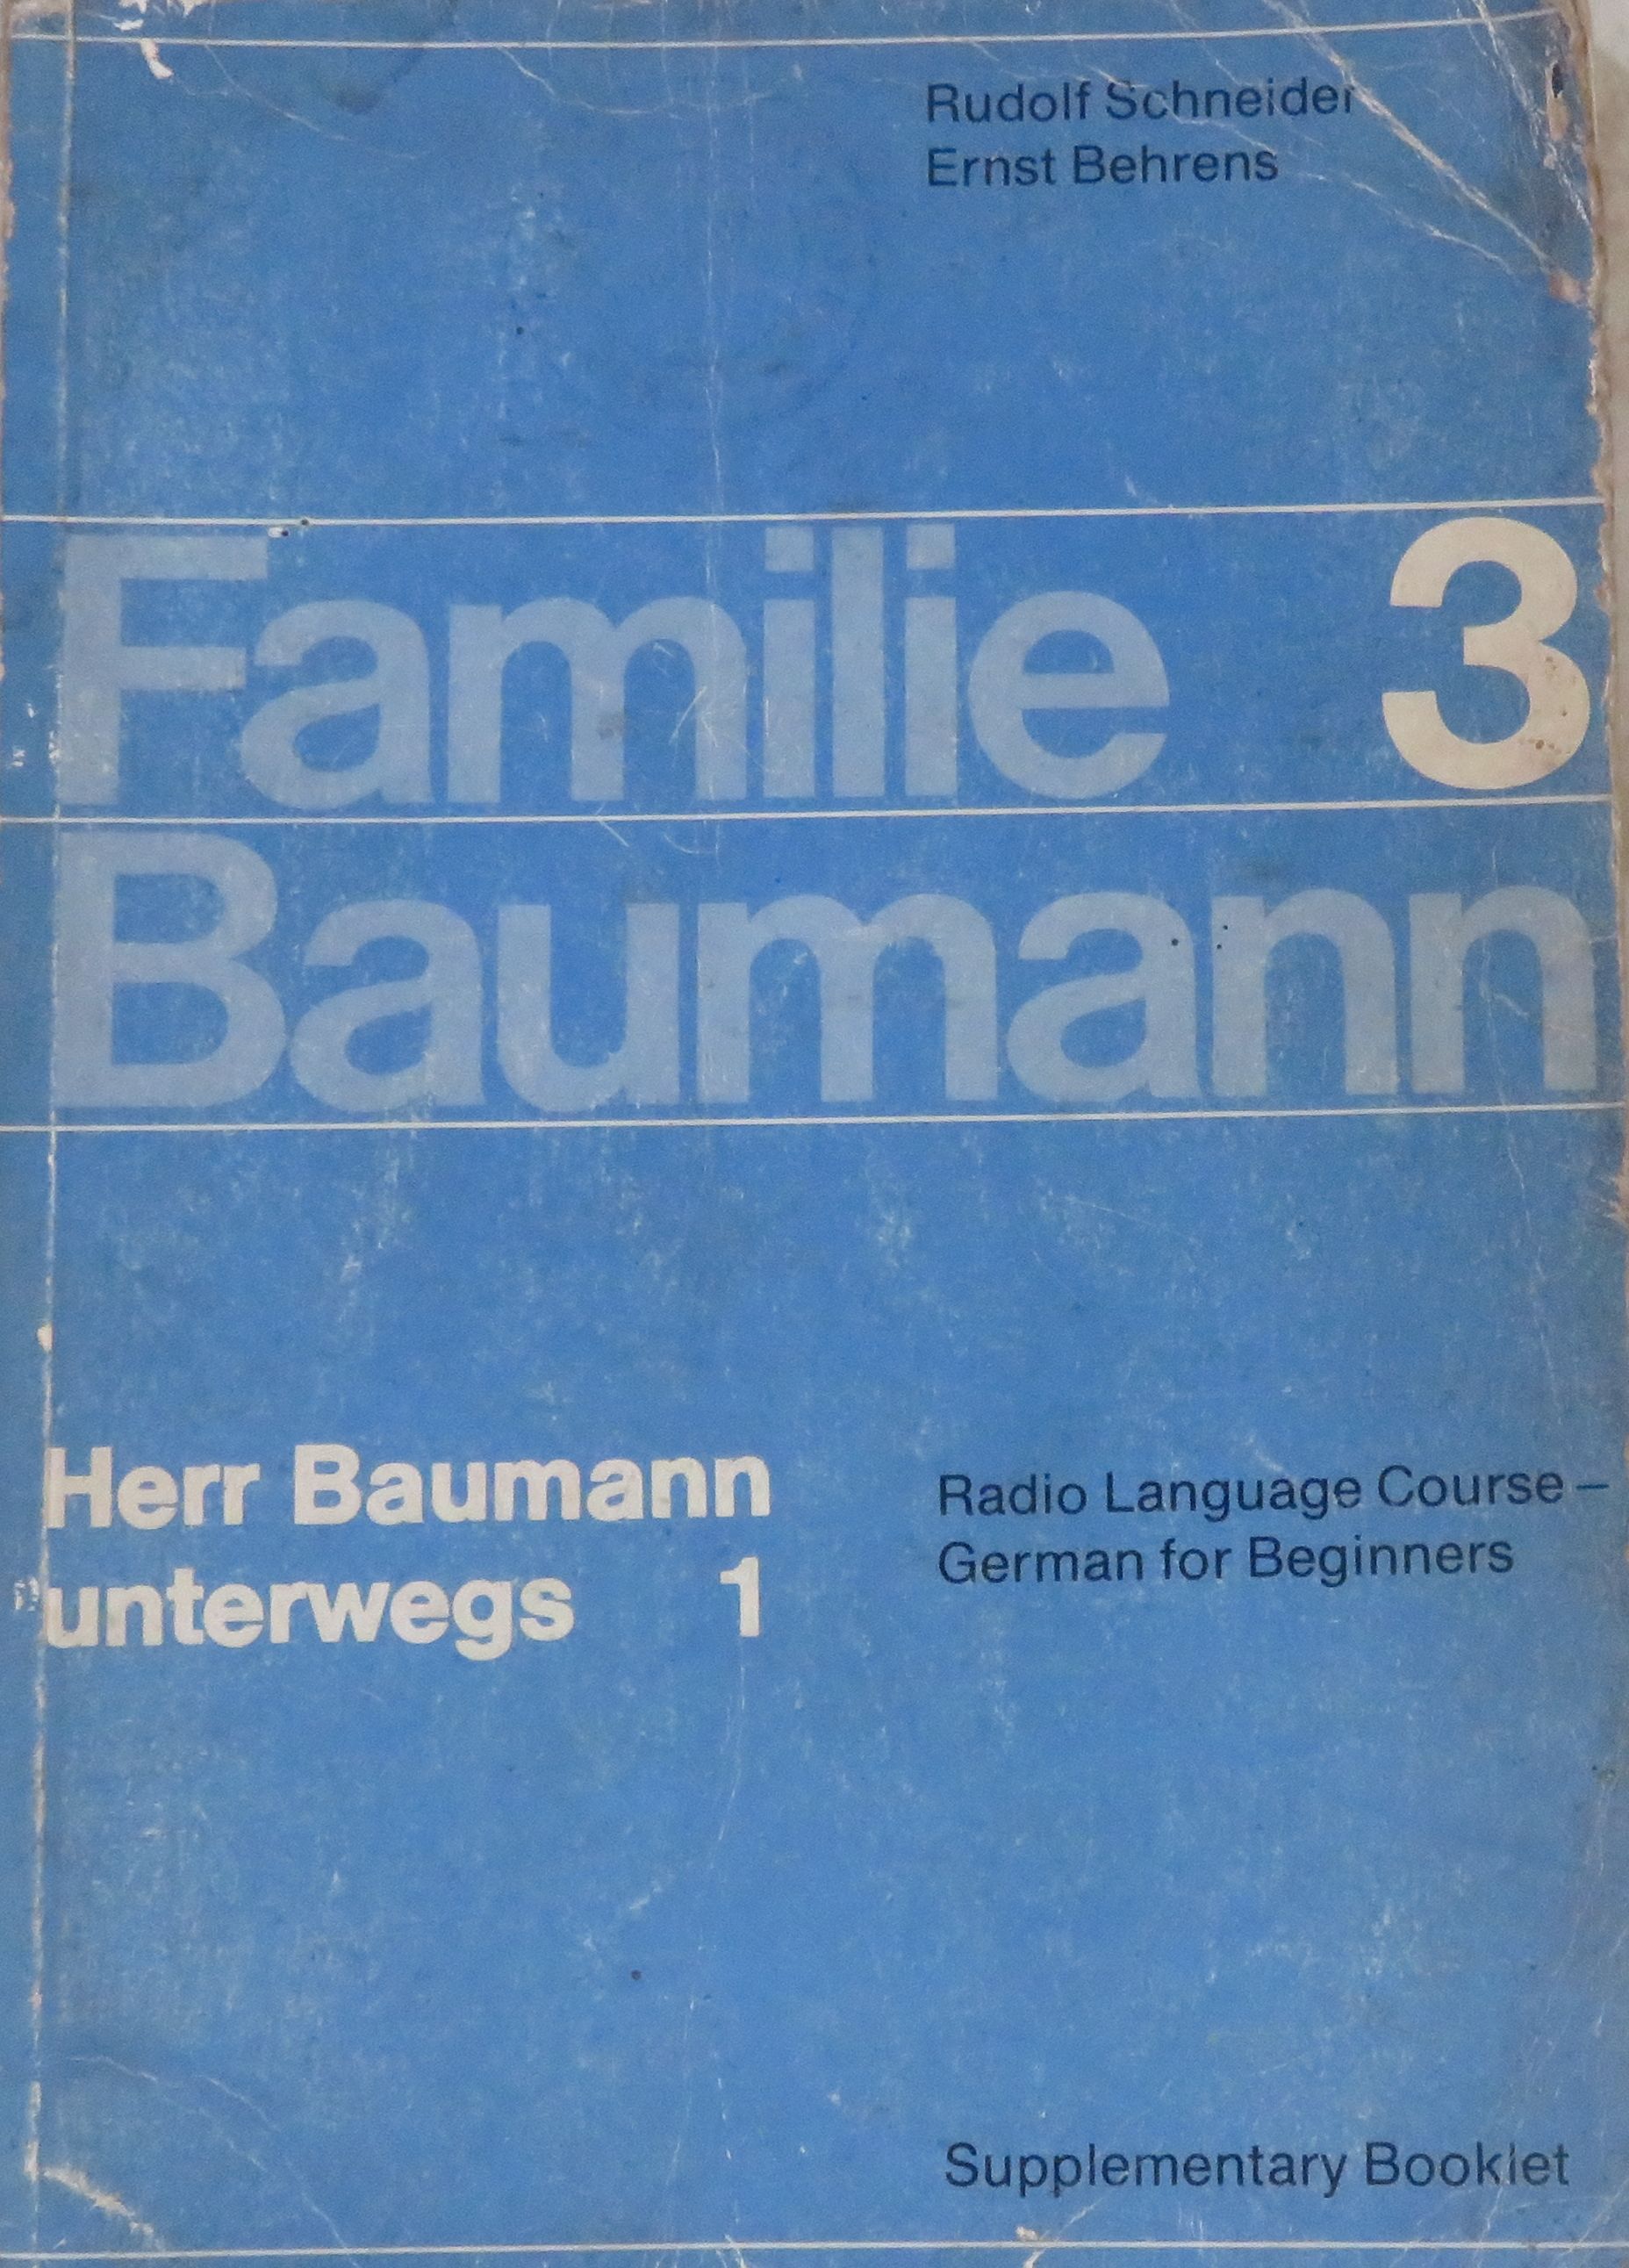 Familie Baumann 3